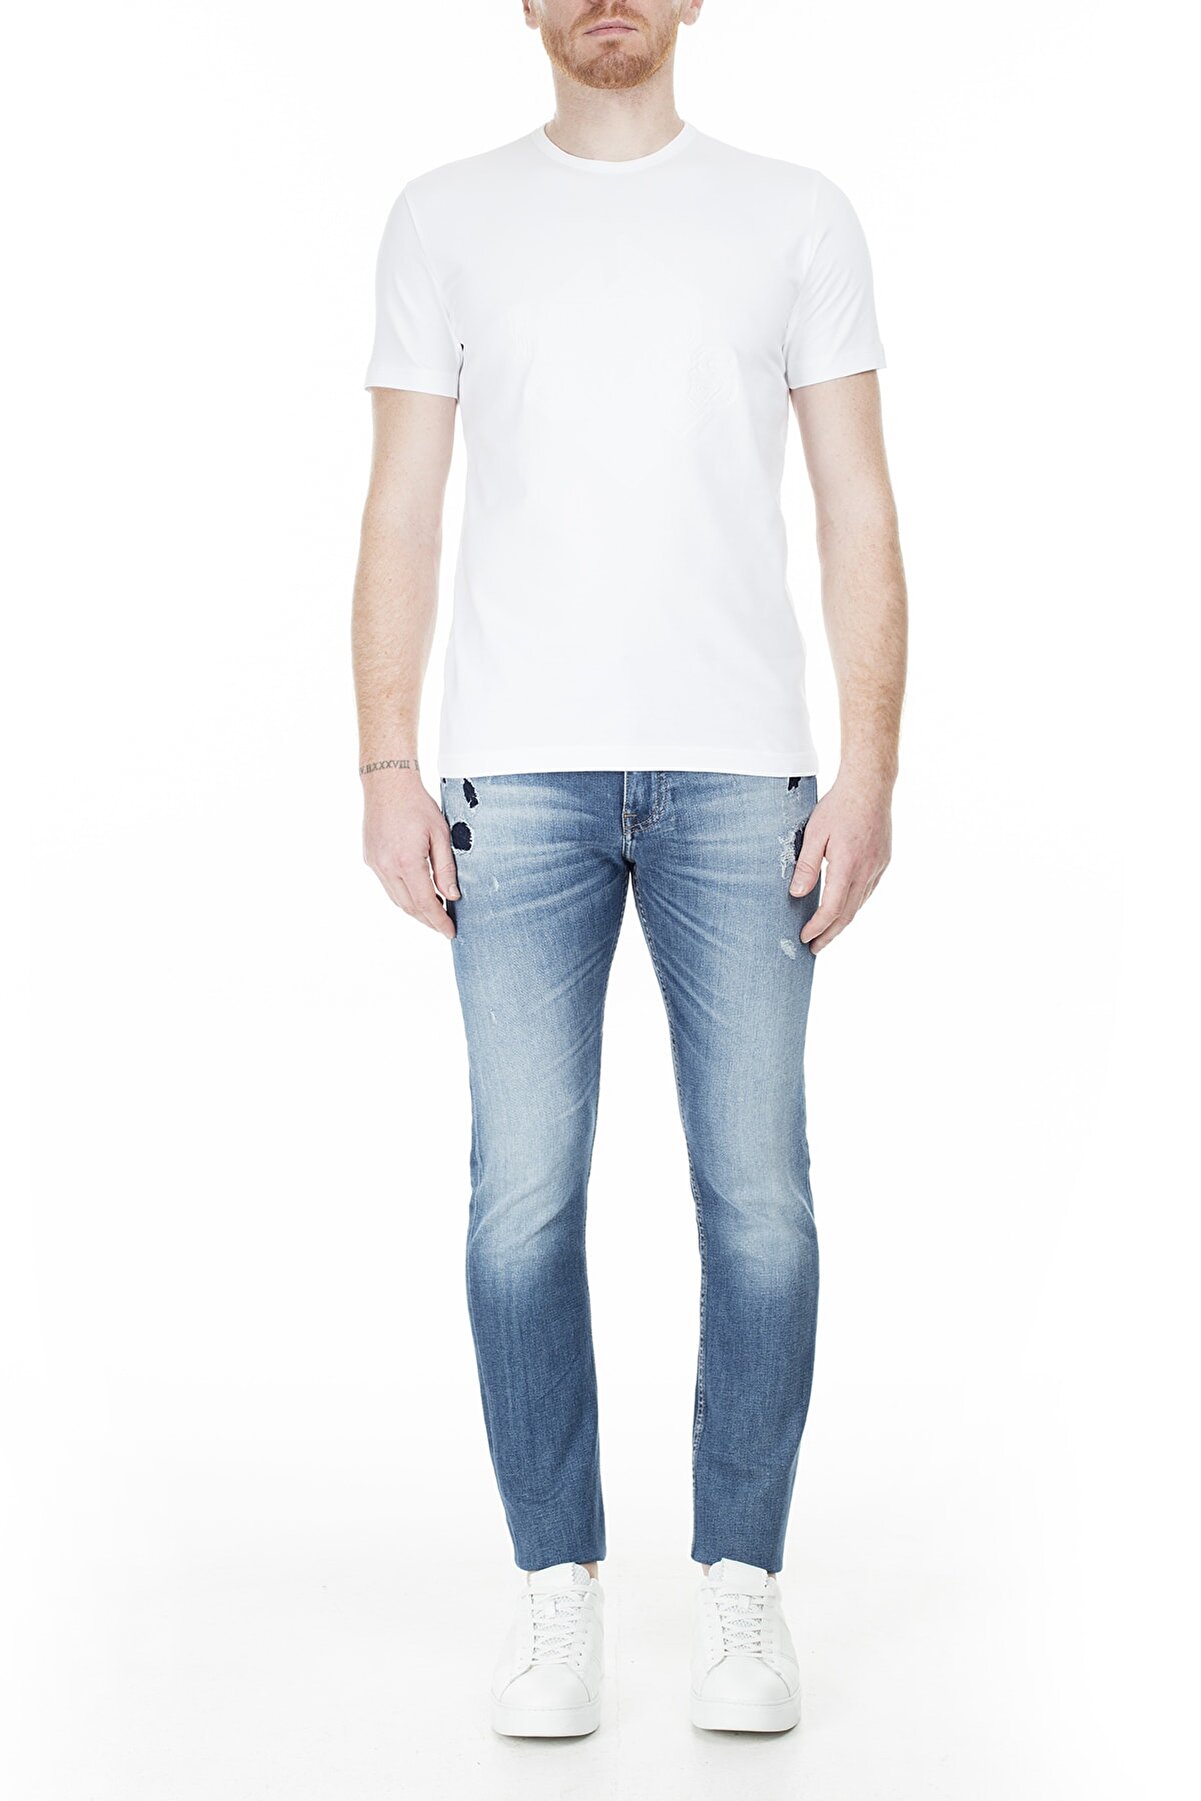 Hugo Boss Slim Fit Jeans Erkek Kot Pantolon 50427412 427